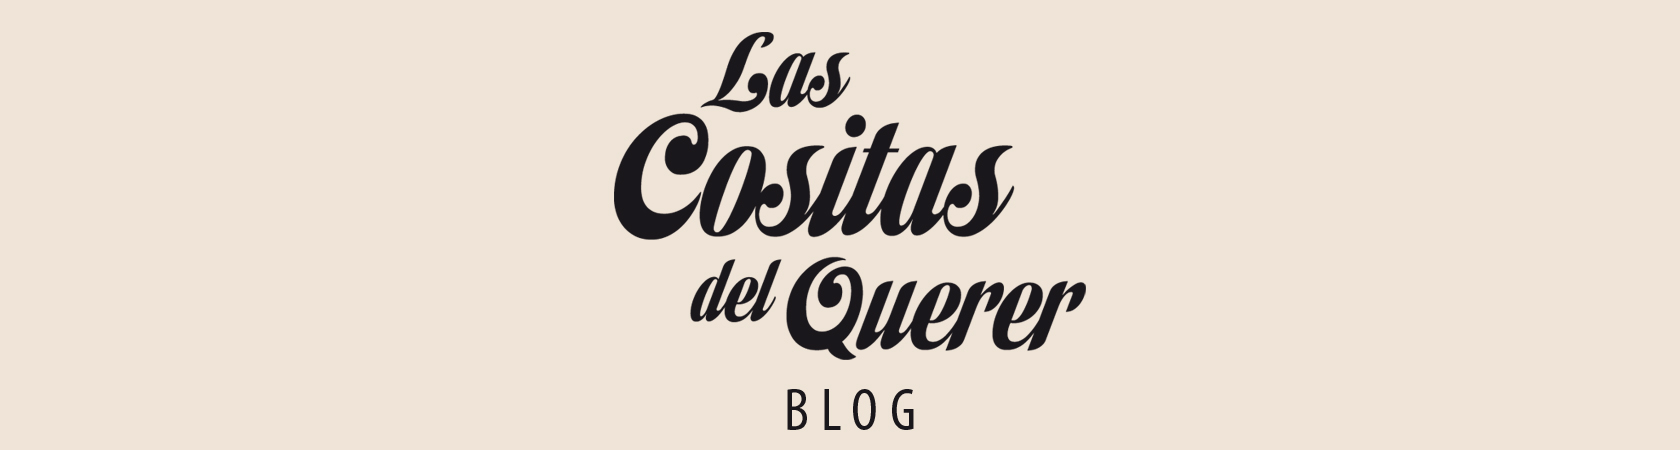 Blog Las Cositas del Querer